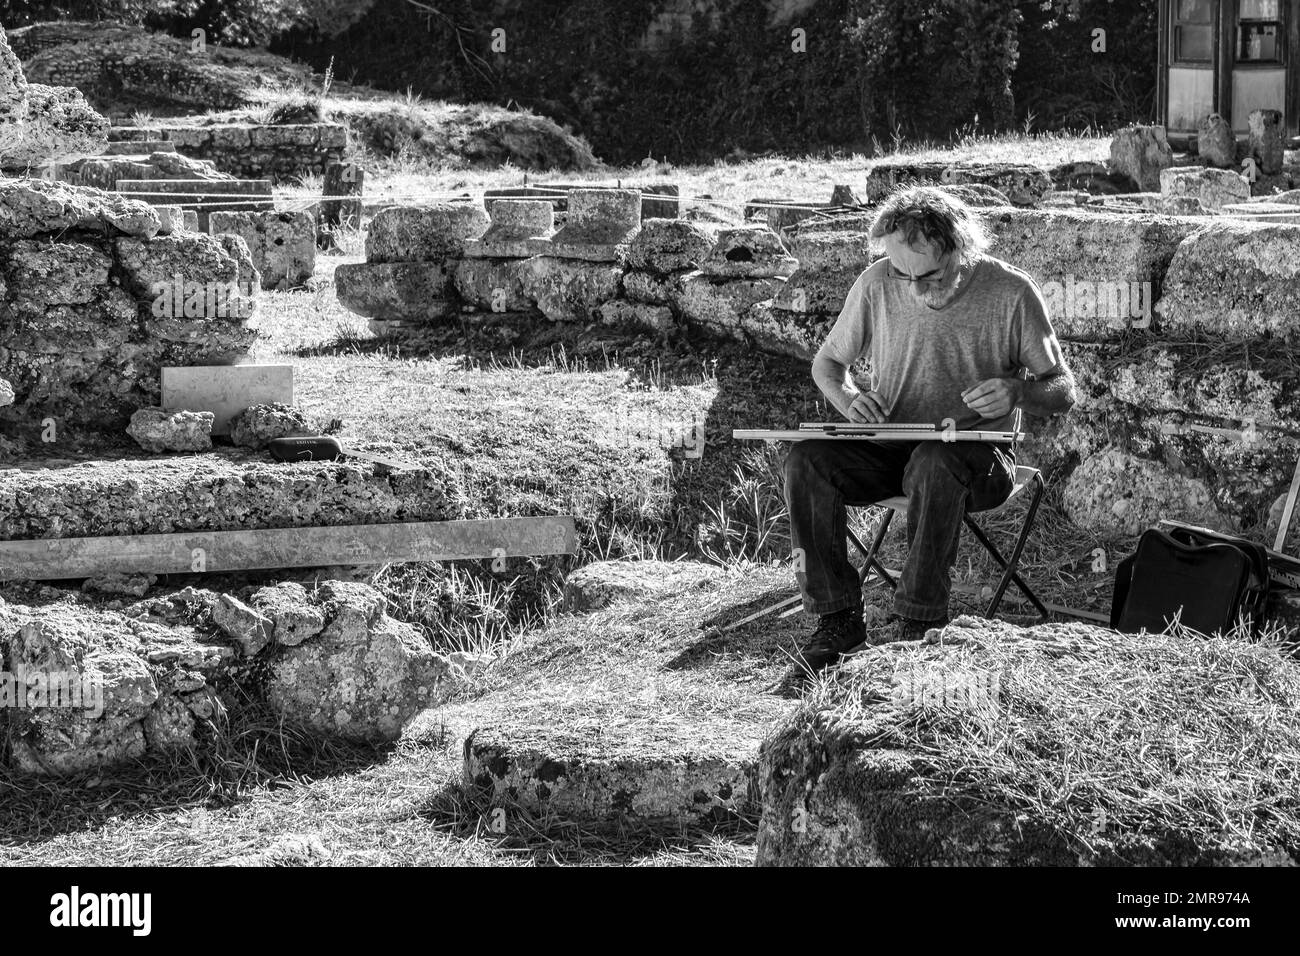 Al lavoro, immagine in bianco e nero di un maschio solita che lavora nell'antico sito di Olympia Grecia Foto Stock